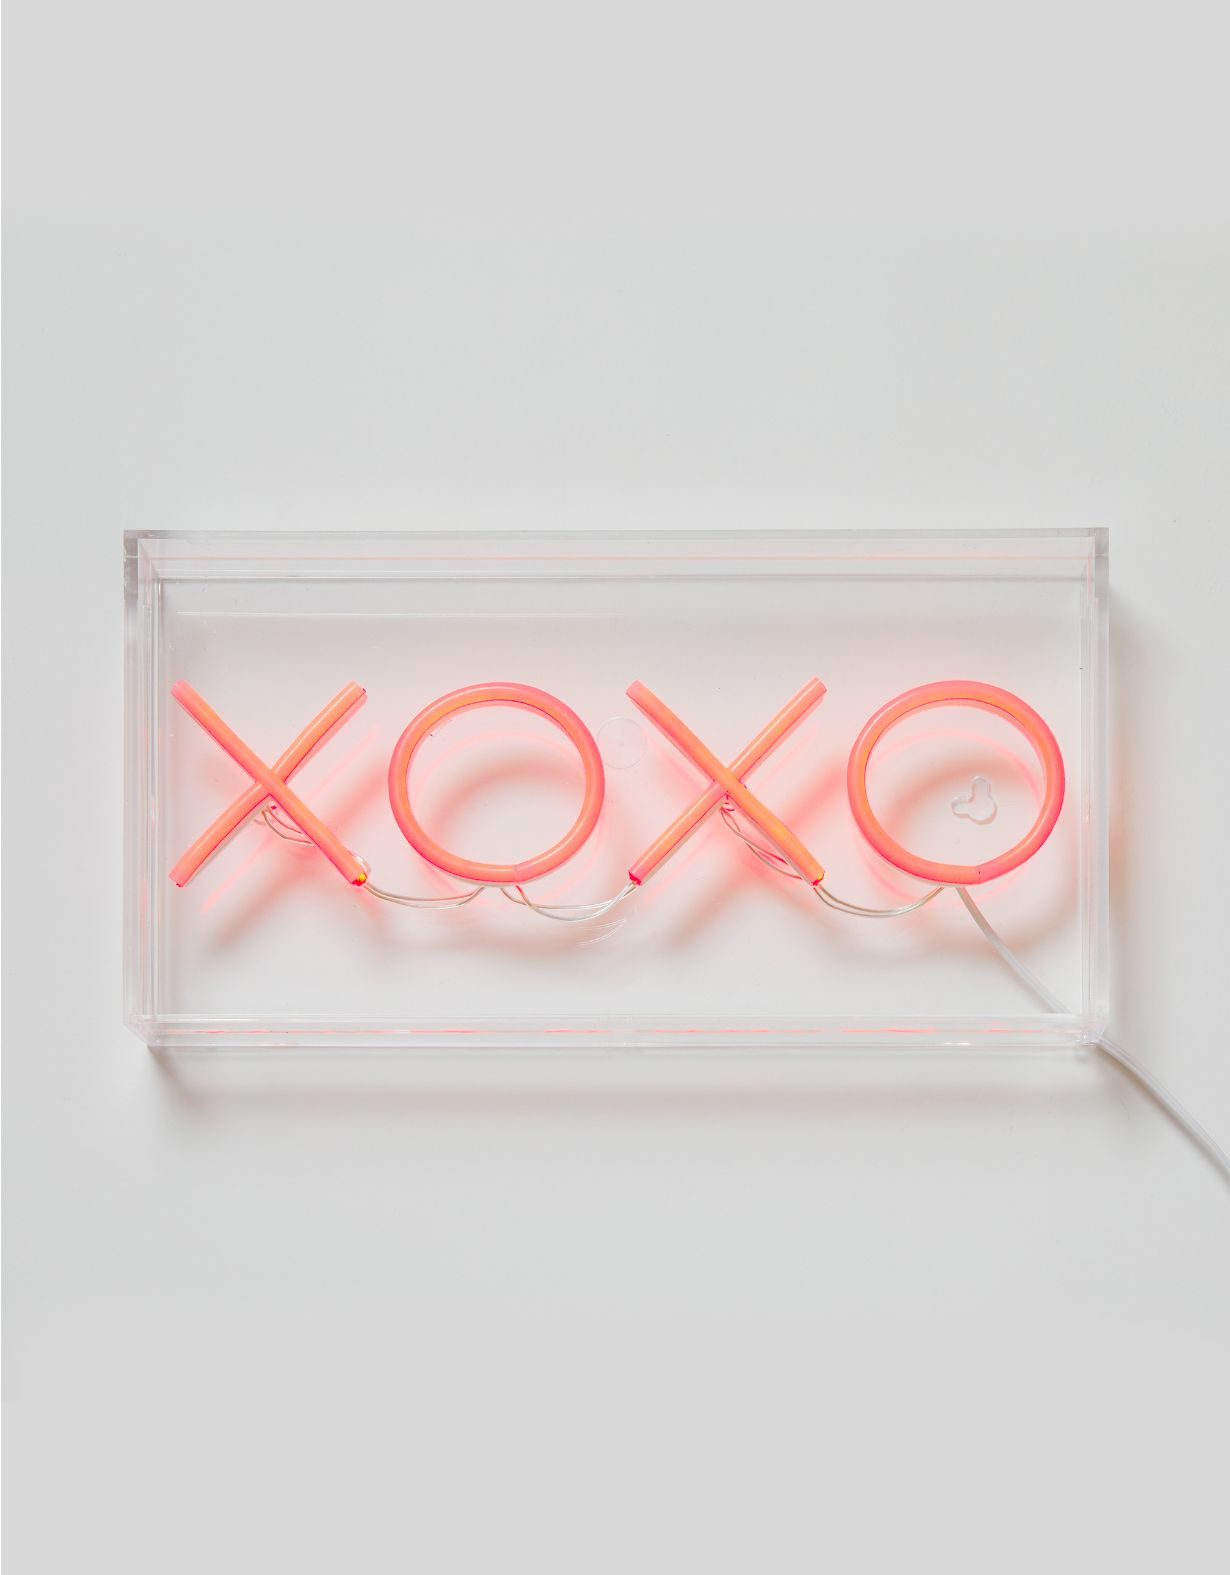 Dormify XOXO Neon Sign